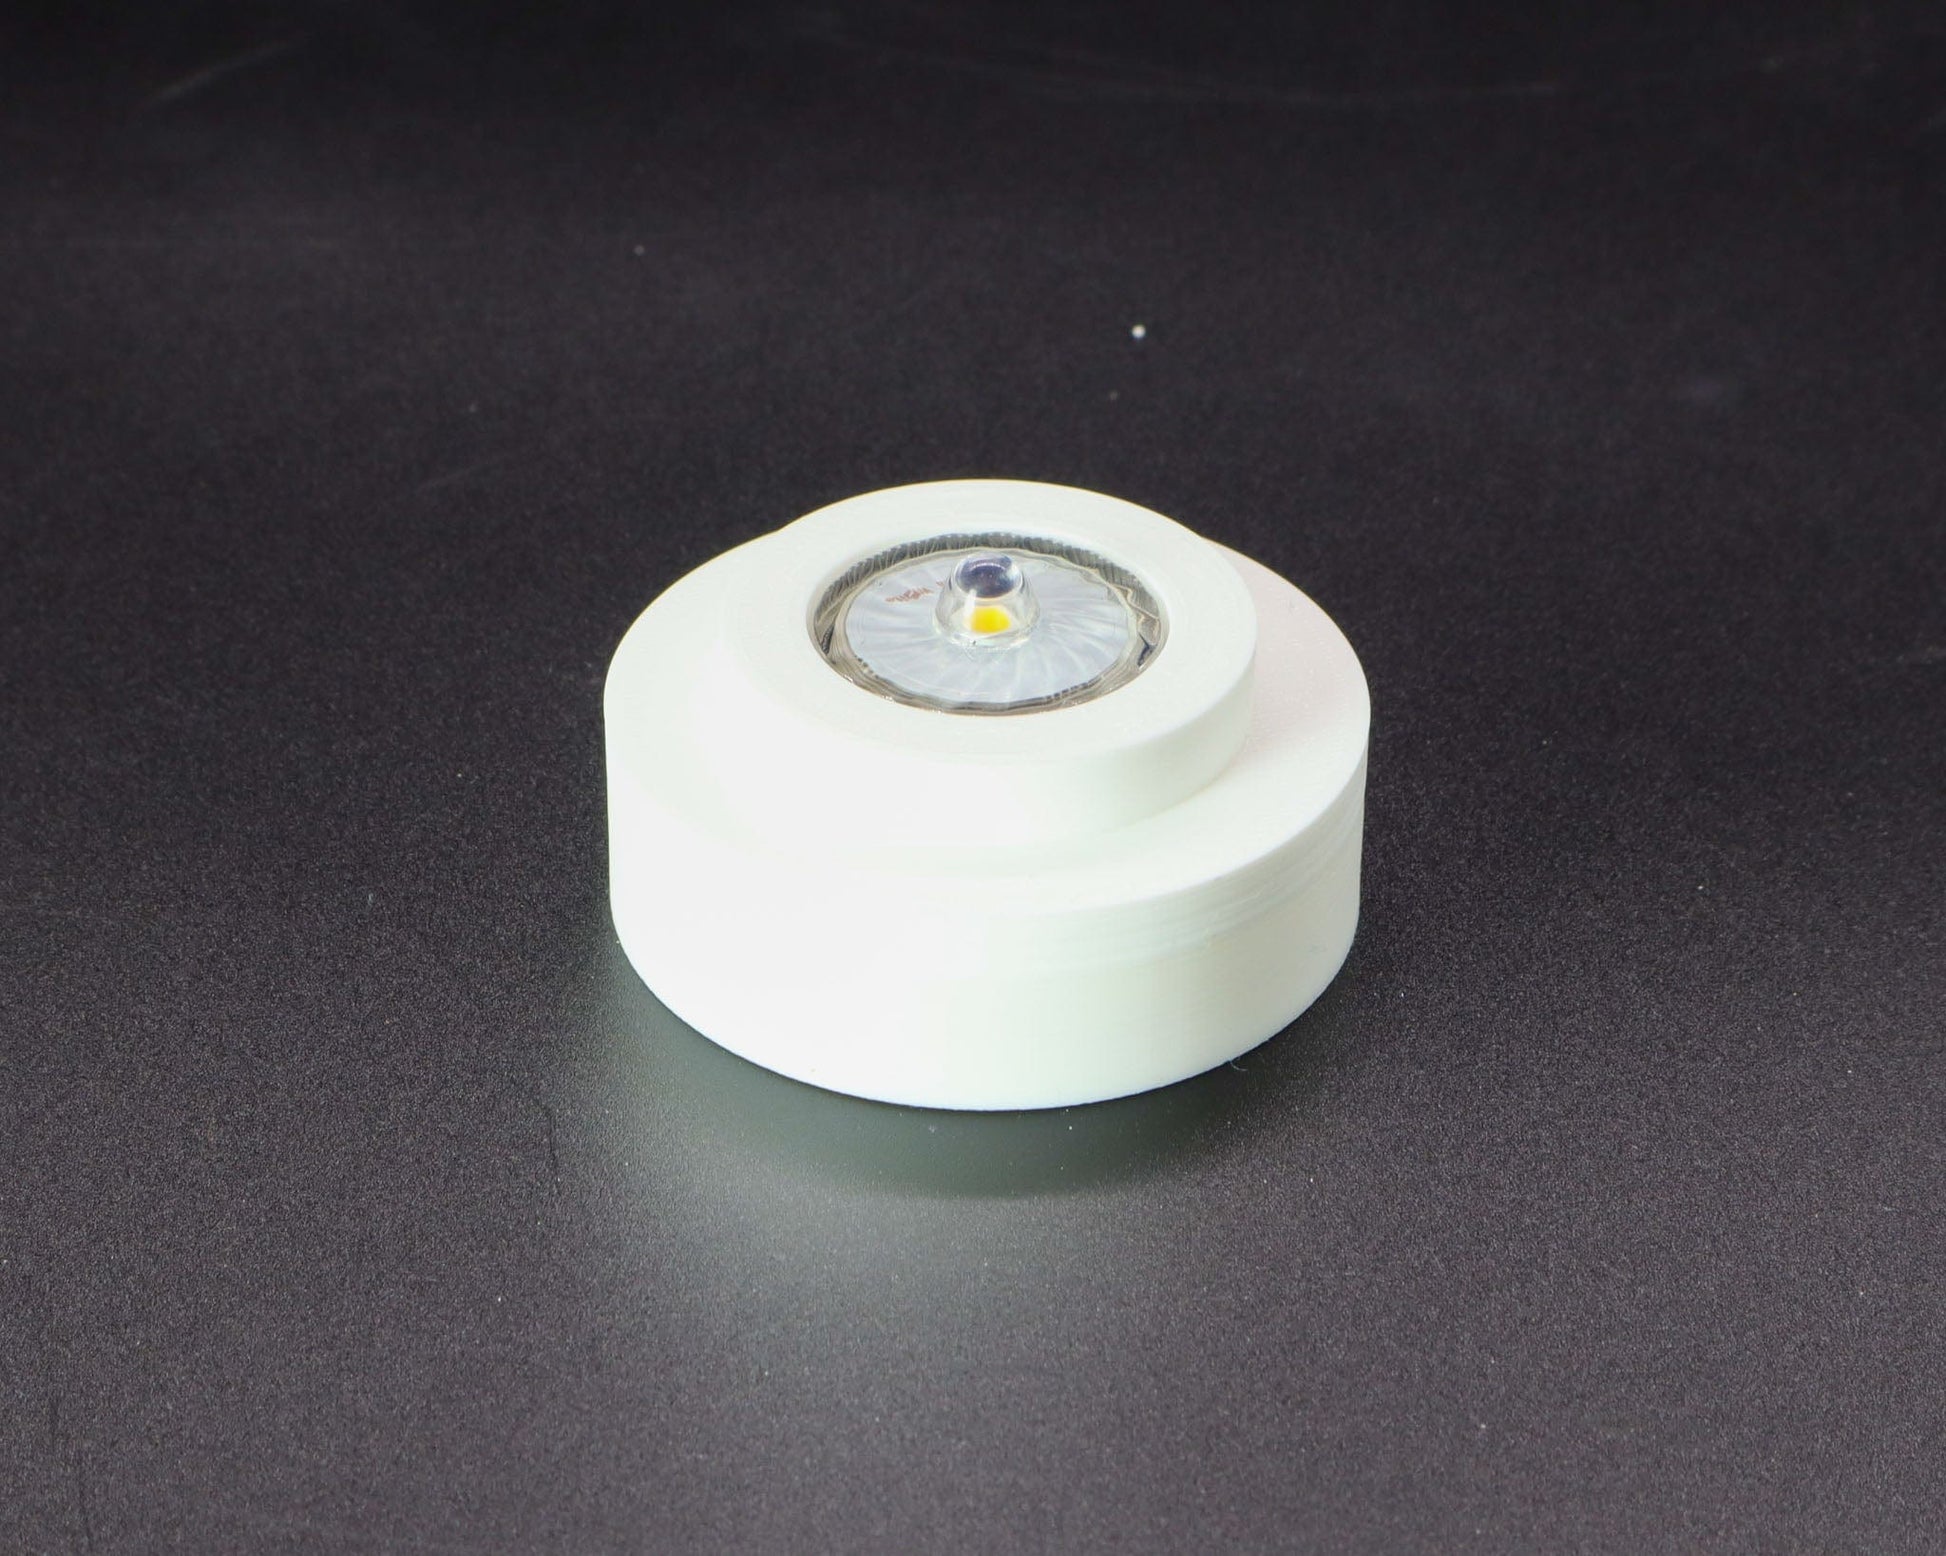 LightAndTimeArt Battery Powered Lamp base Battery Powered Lamp Base for "Hemingray-10" Glass Insulators